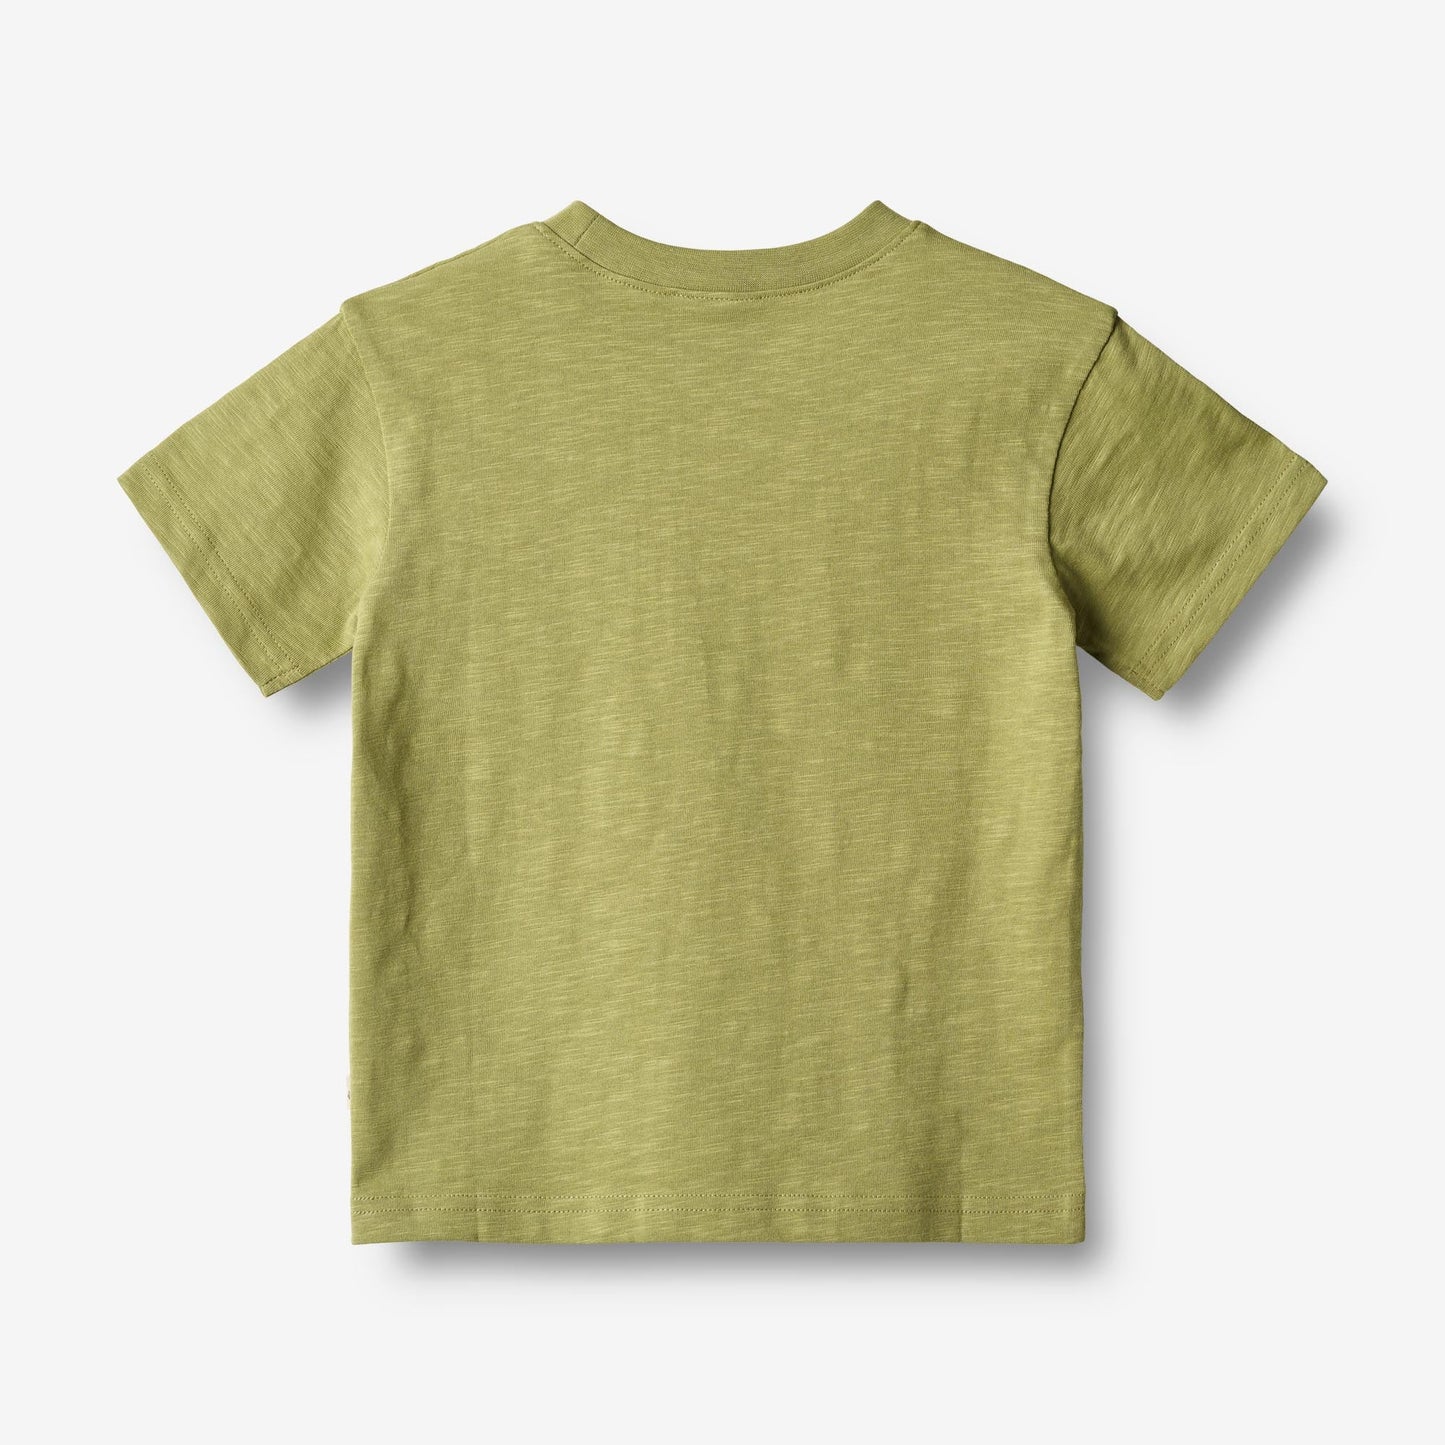 Wheat 'Dines' S/S Children's T-Shirt - Sage